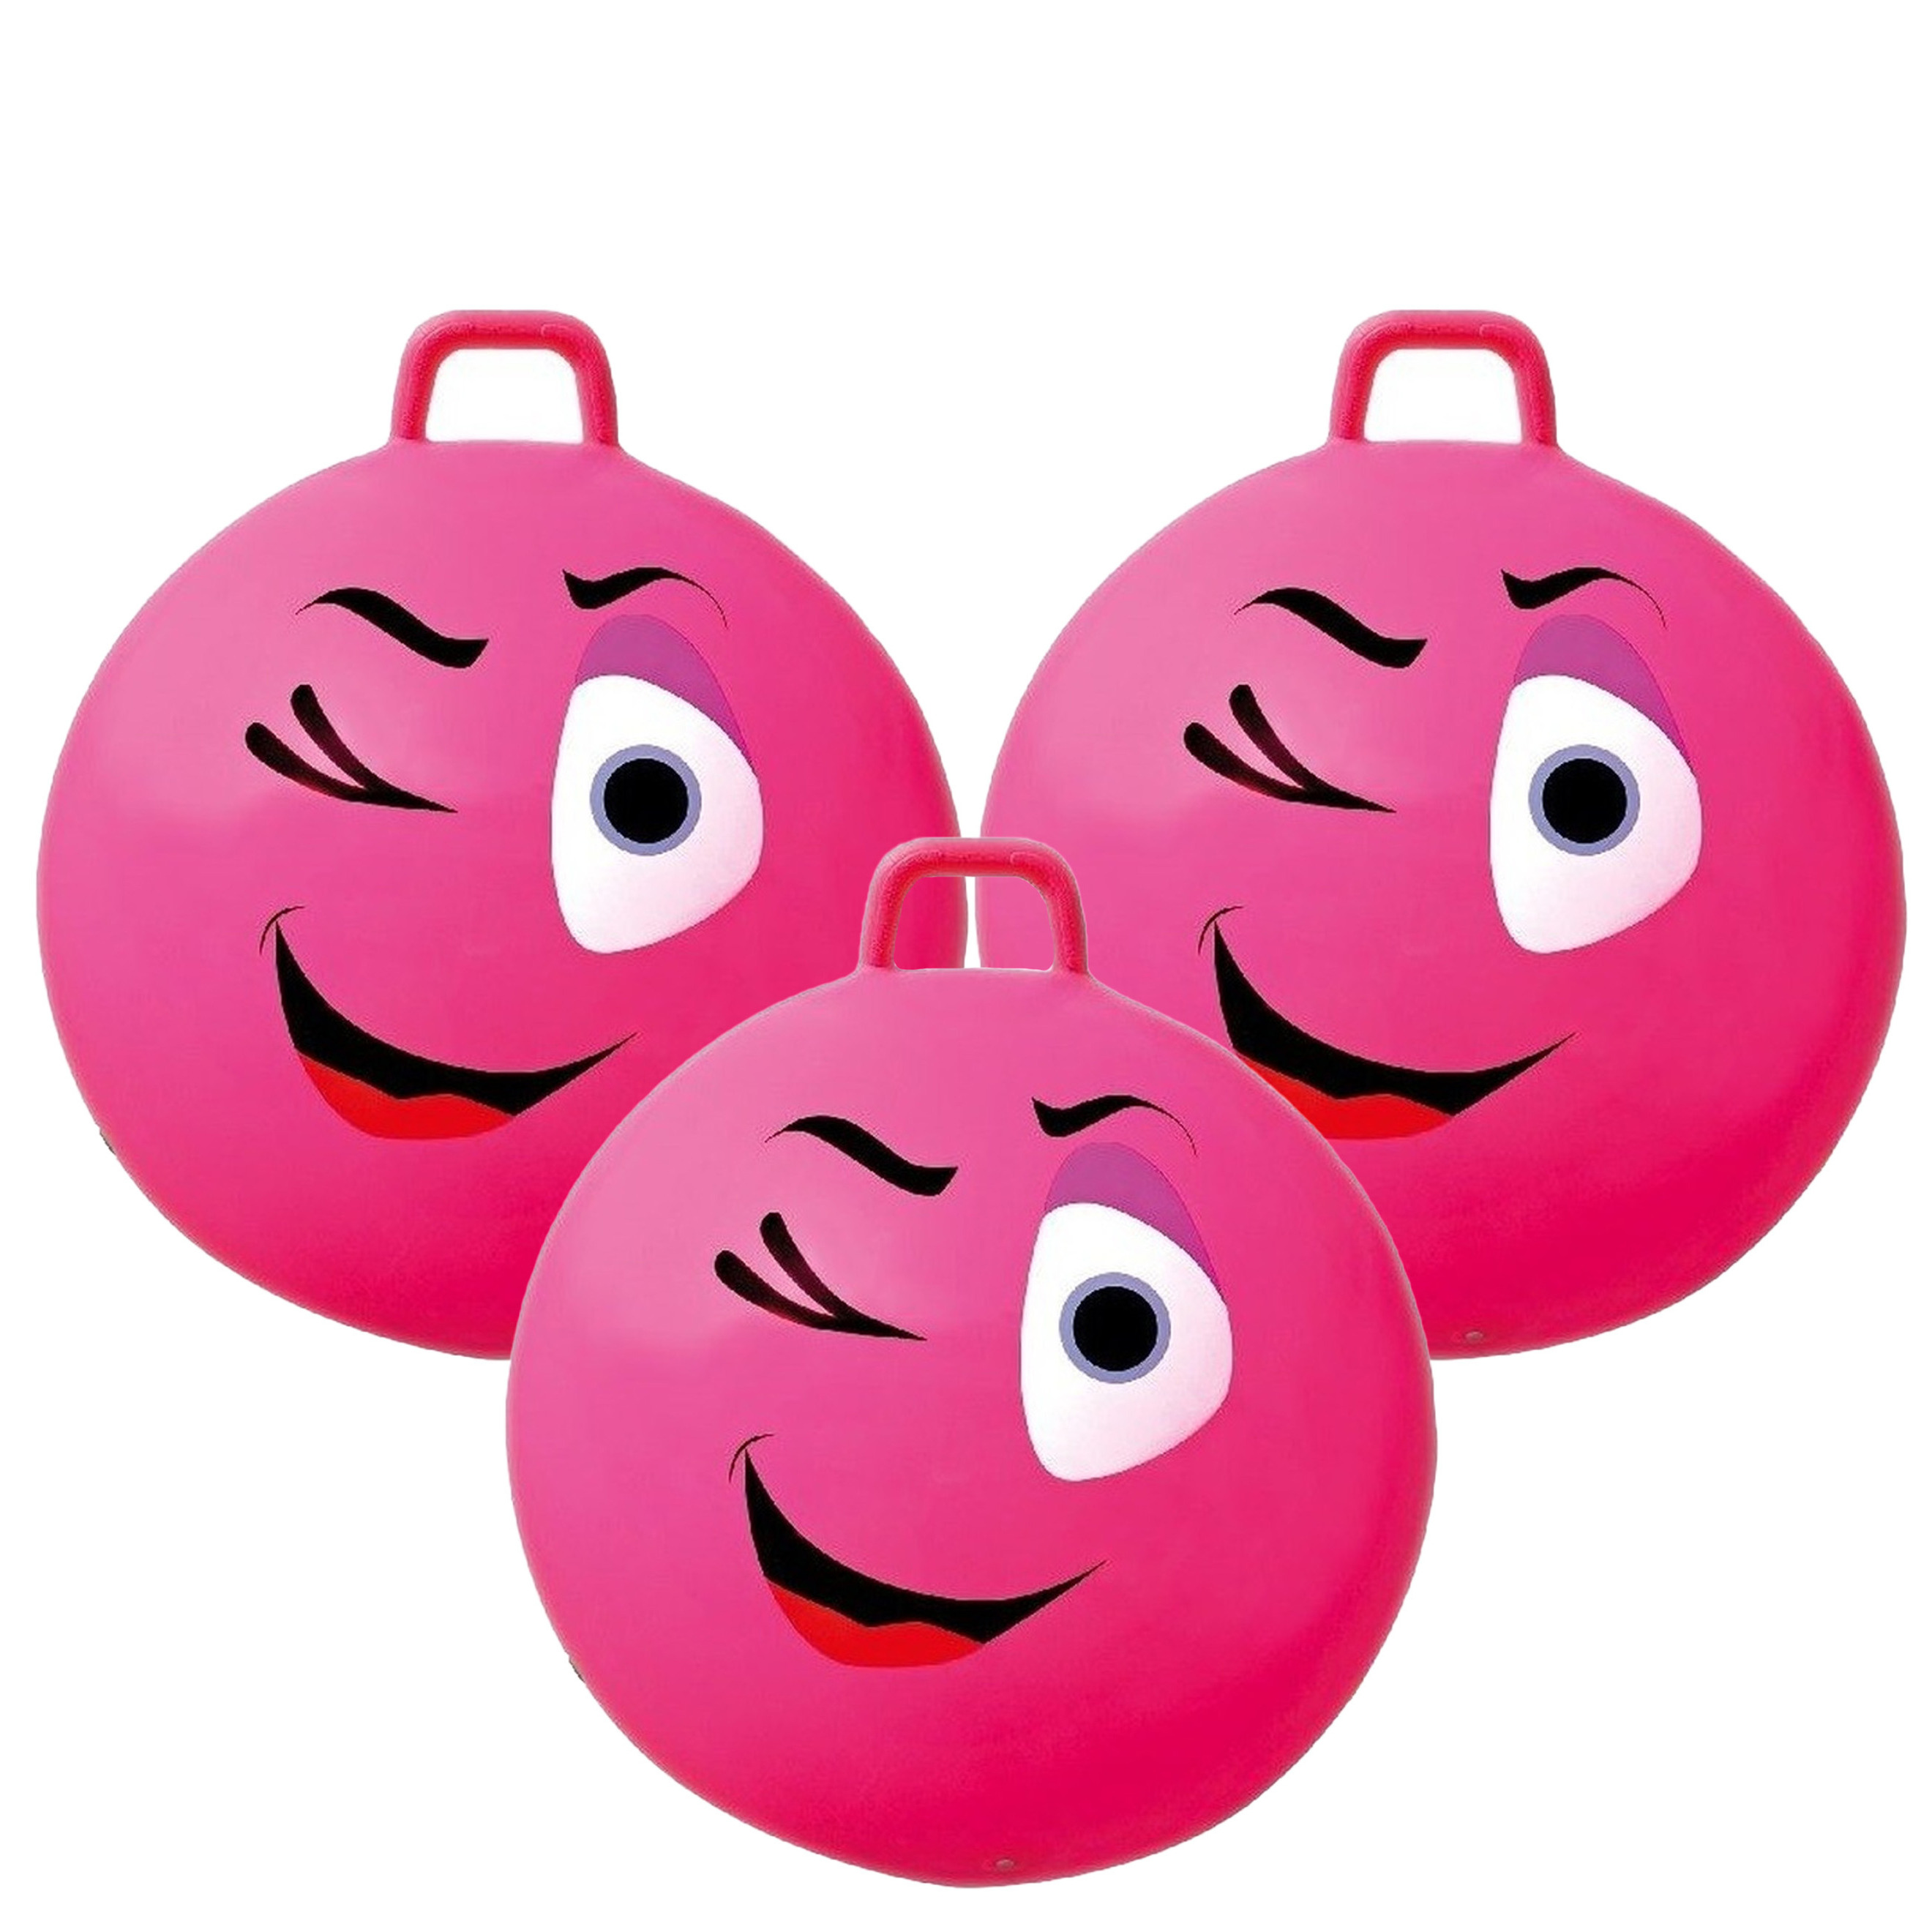 3x stuks roze skippybal smiley voor kinderen 65 cm